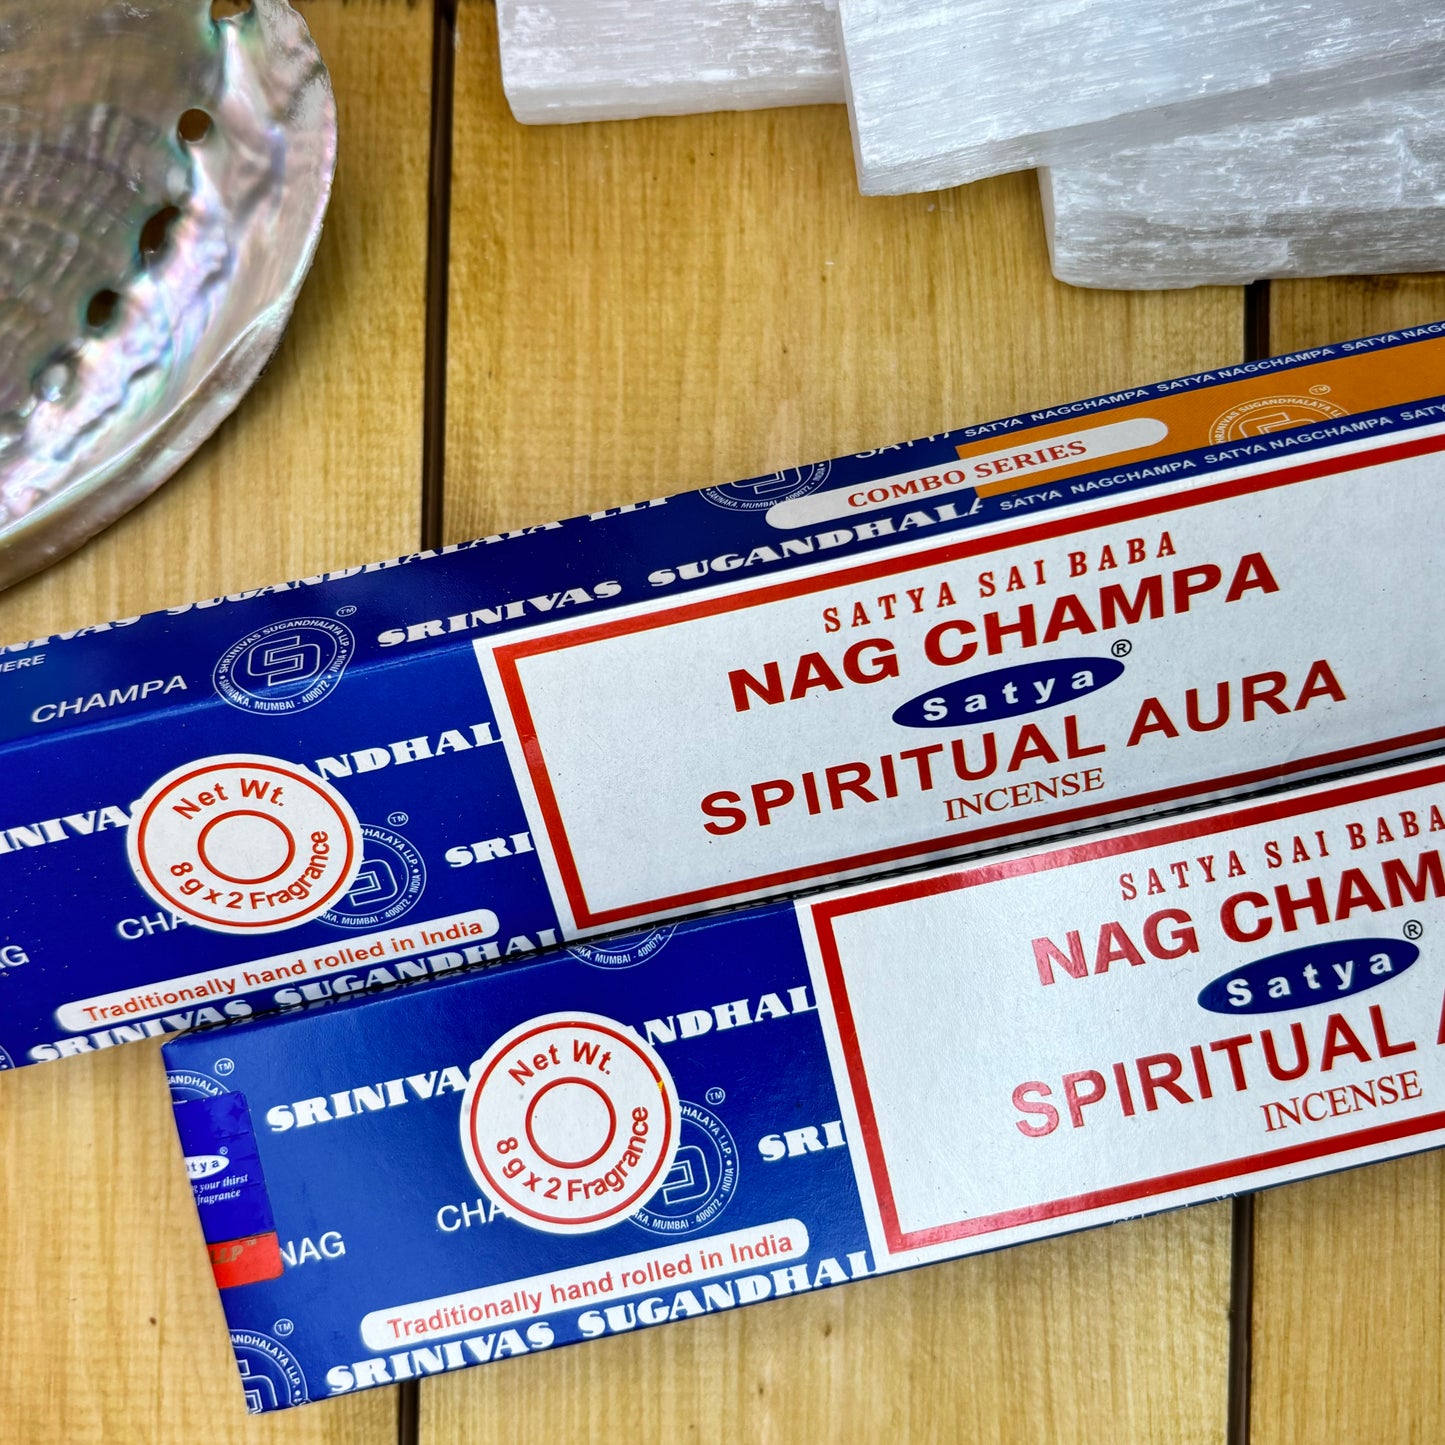 Mezcla de Aura Espiritual/Nag Champa - Varillas de Incienso Satya